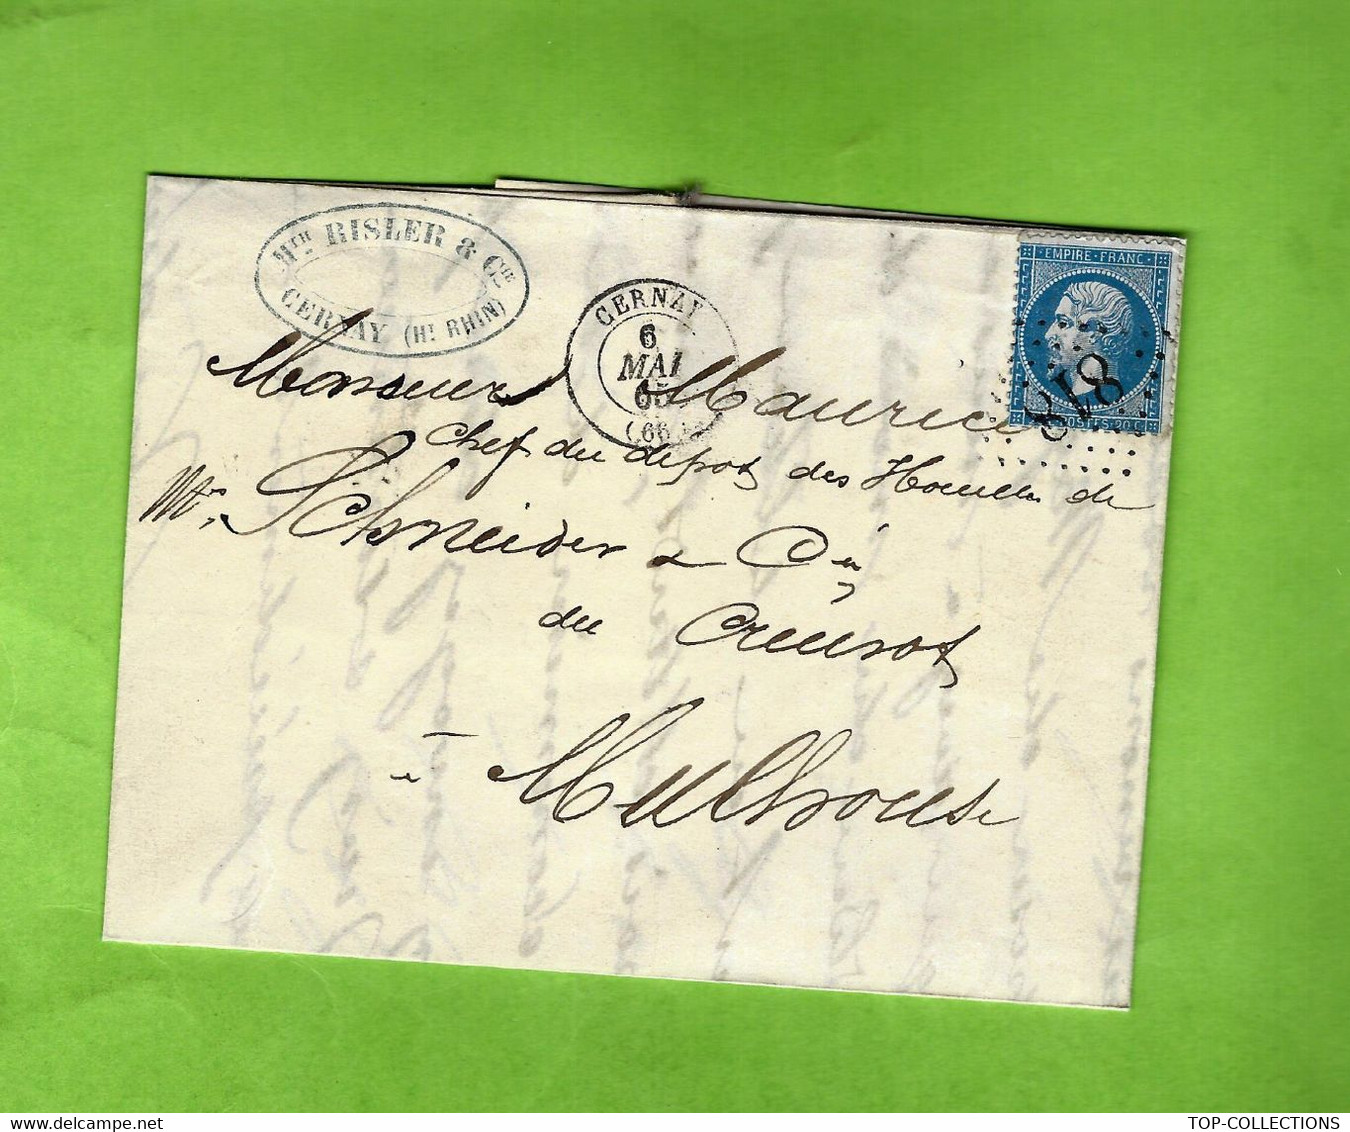 ALSACE  INDUSTRIE 1865 de Cernay Haut Rhin sign. Risler Mathieu MANUFACTURE pour Schneider Le Creusot dépôt de  Mulhouse